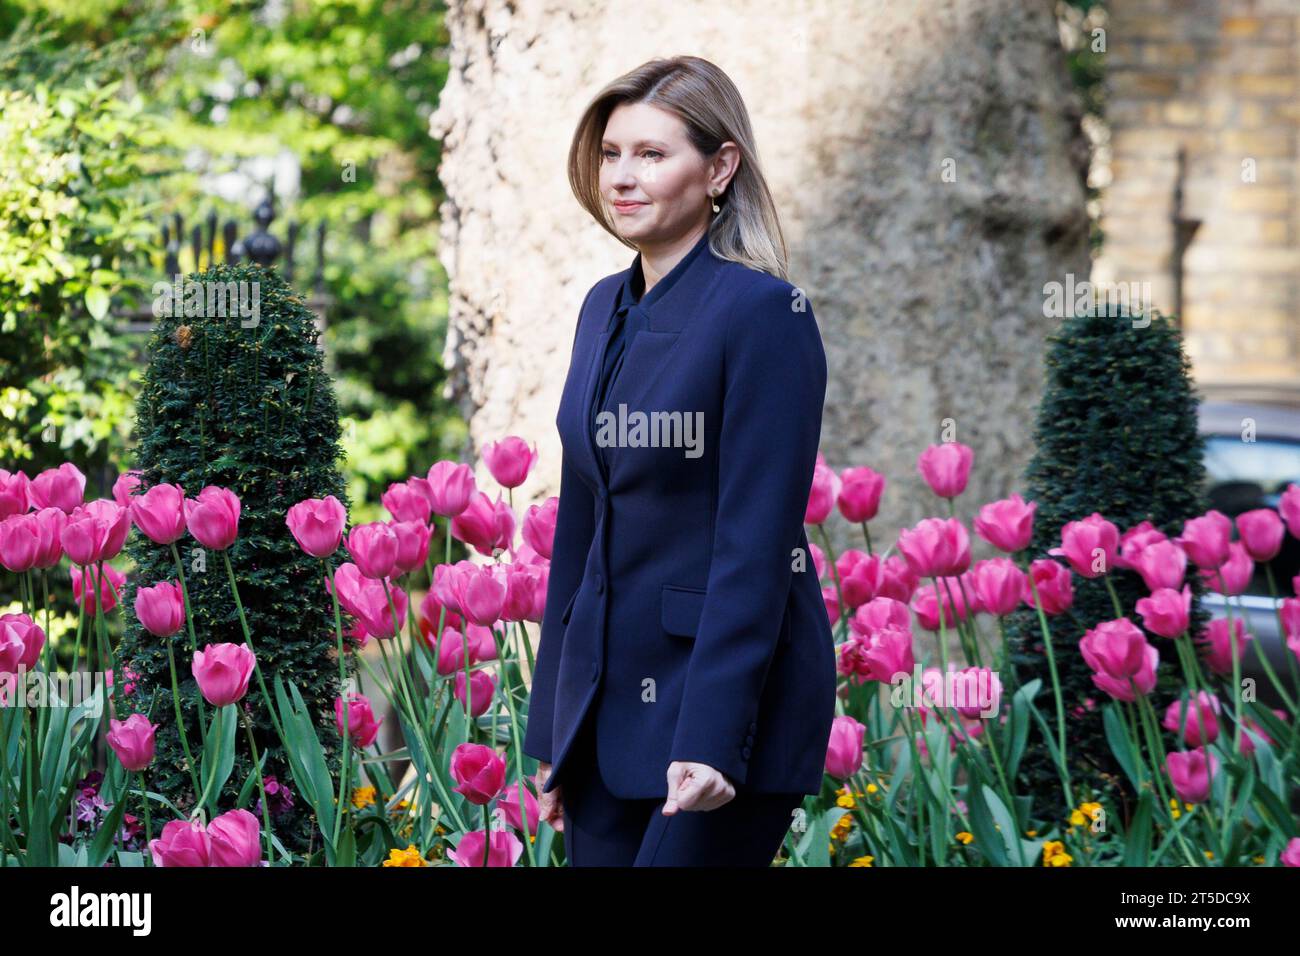 MccLi0004082 la signora Murty dà il benvenuto alla First Lady dell'Ucraina, Olena Zelenska, a Downing Street. Immagine scattata il 4 maggio 2023. © Belinda Jiao jiao.bil Foto Stock